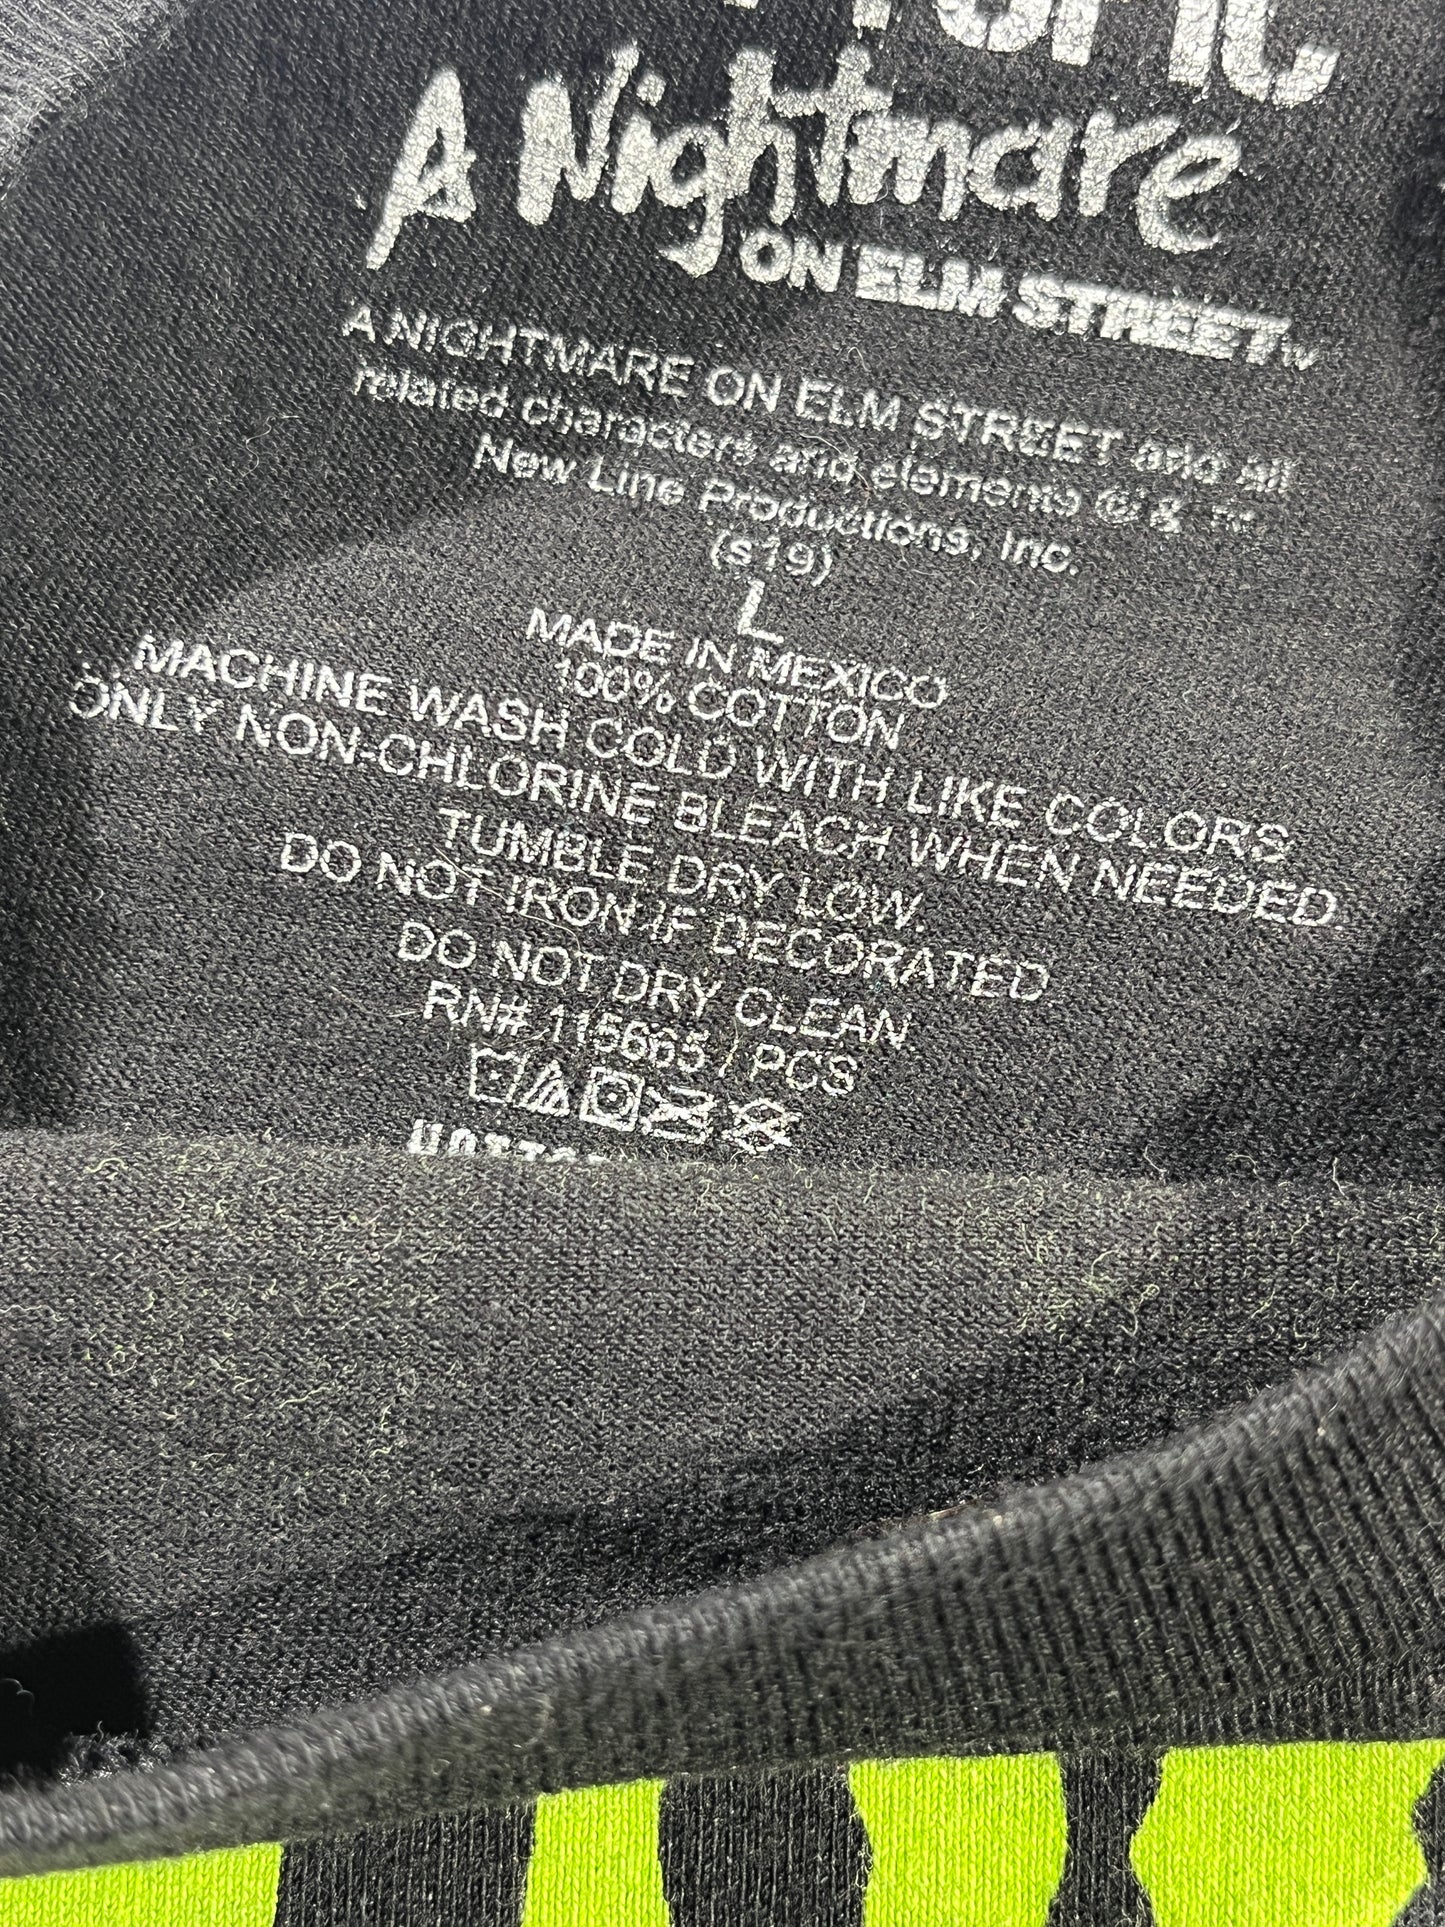 Vintage Nightmare On Elm T-Shirt Freddie Krueger